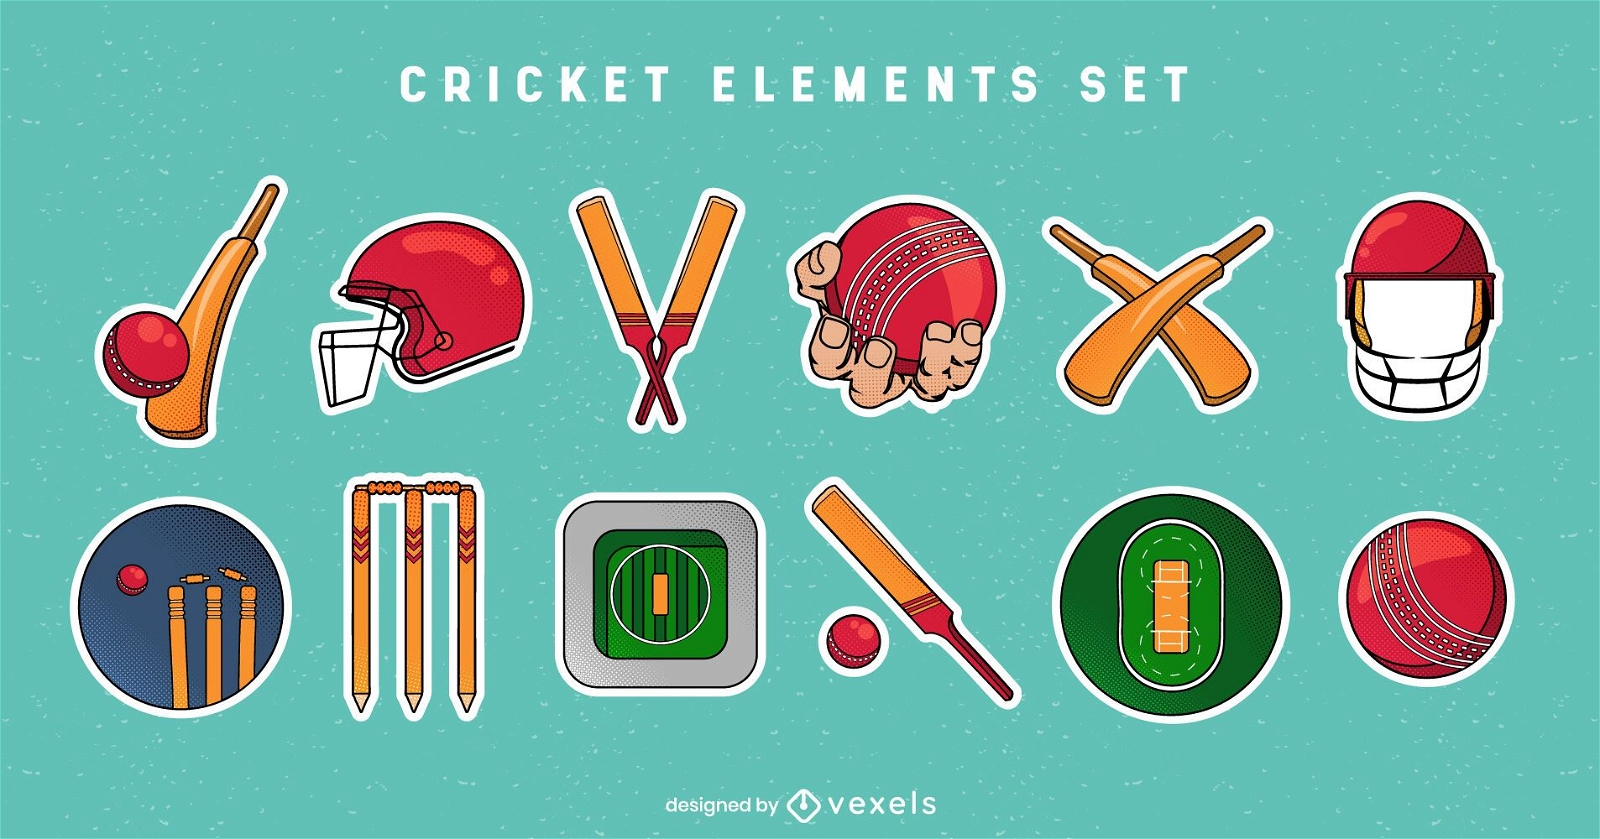 Cricket element set